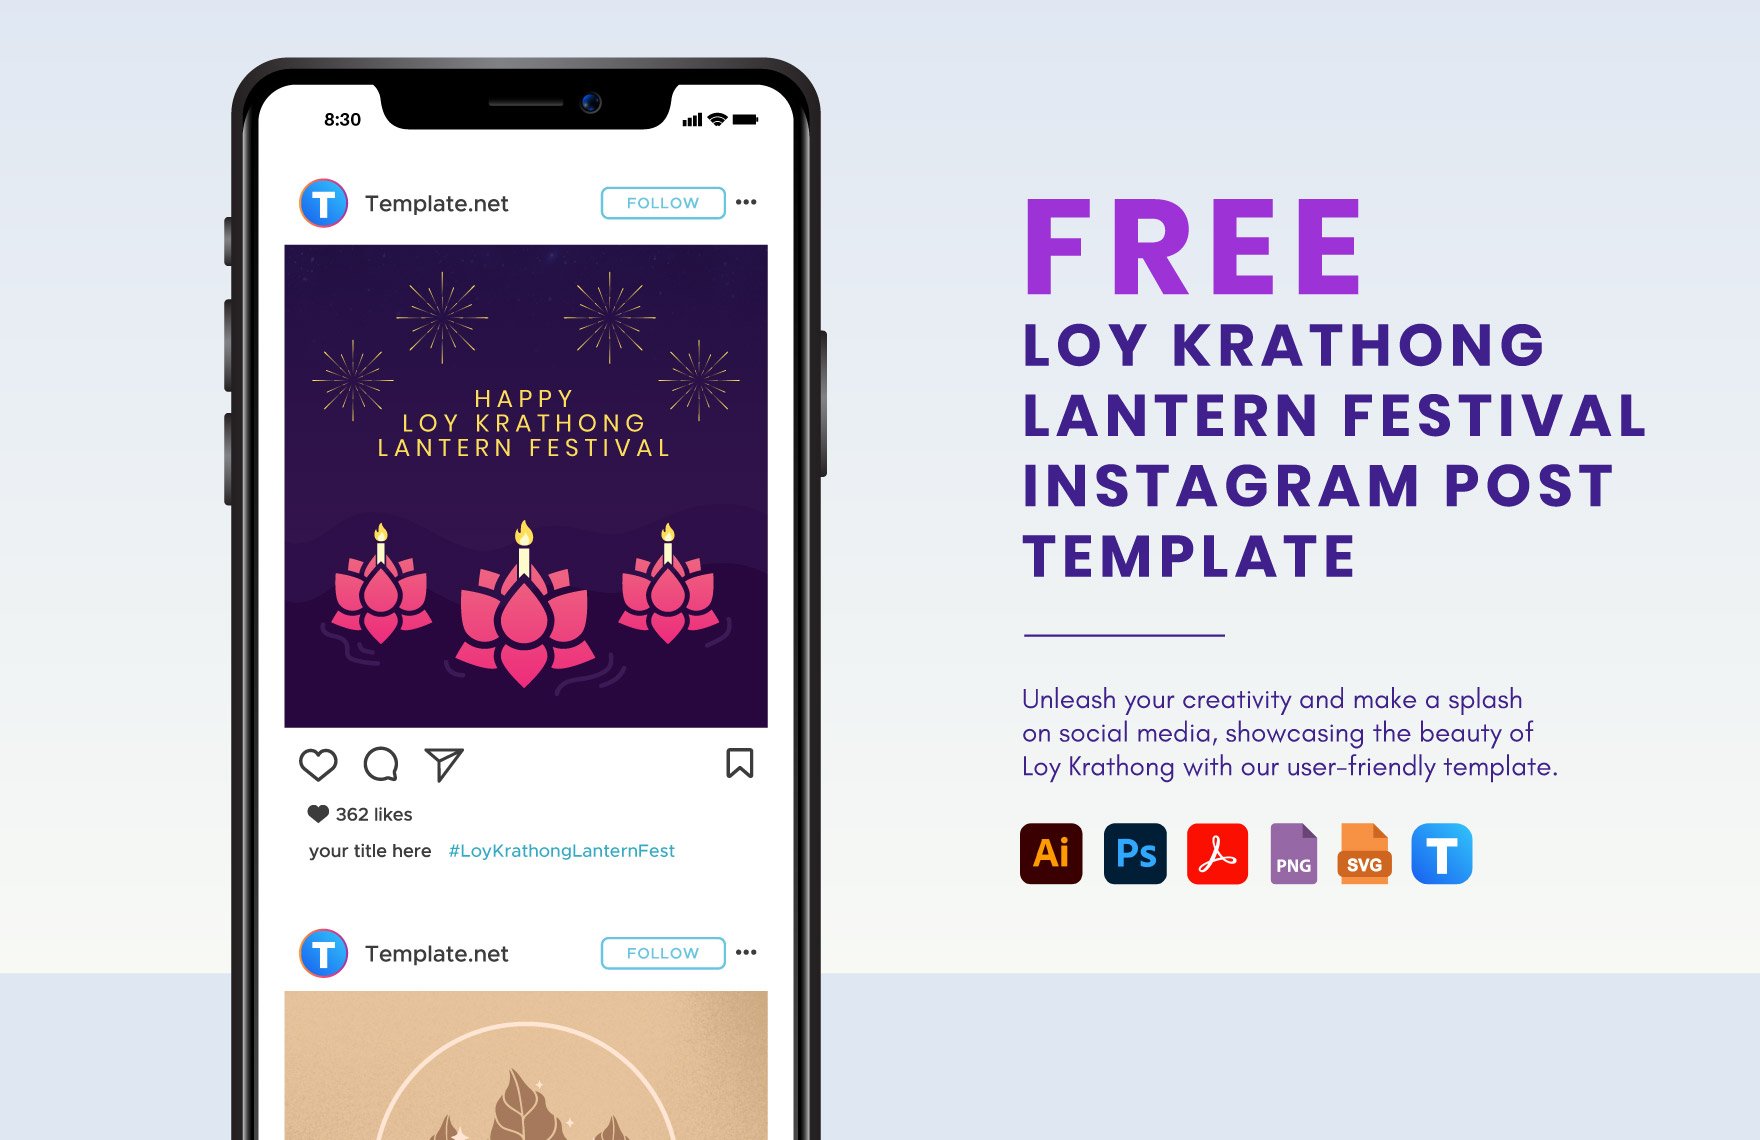 Free Loy Krathong Lantern Festival Instagram Post Template in PDF, Illustrator, PSD, SVG, PNG